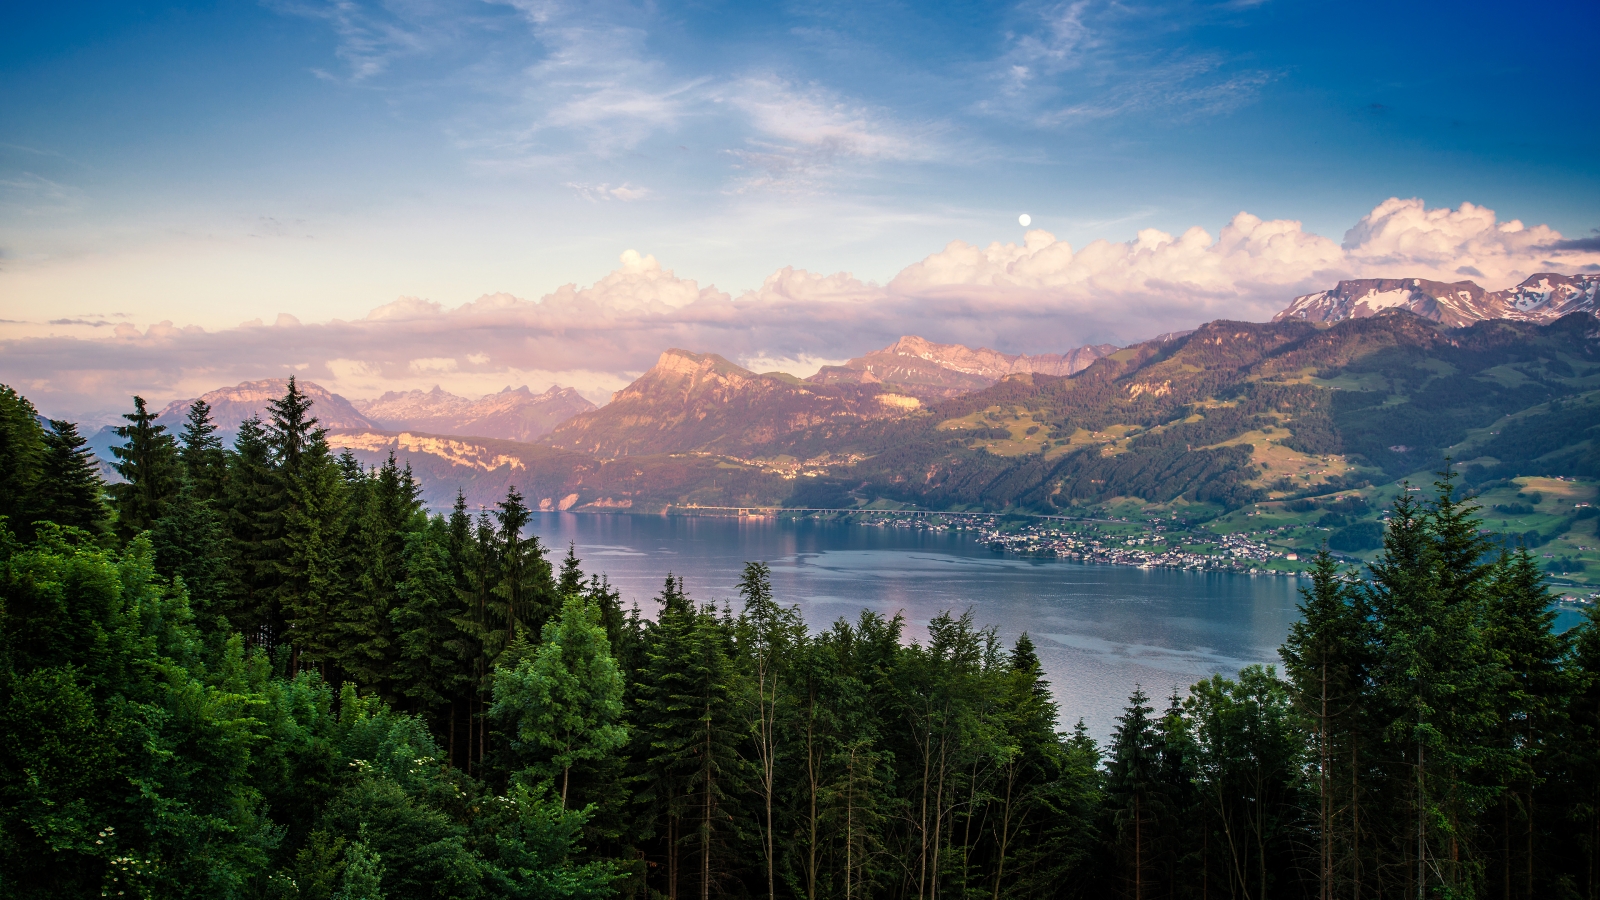 Lake Zurich Landscape for 1600 x 900 HDTV resolution